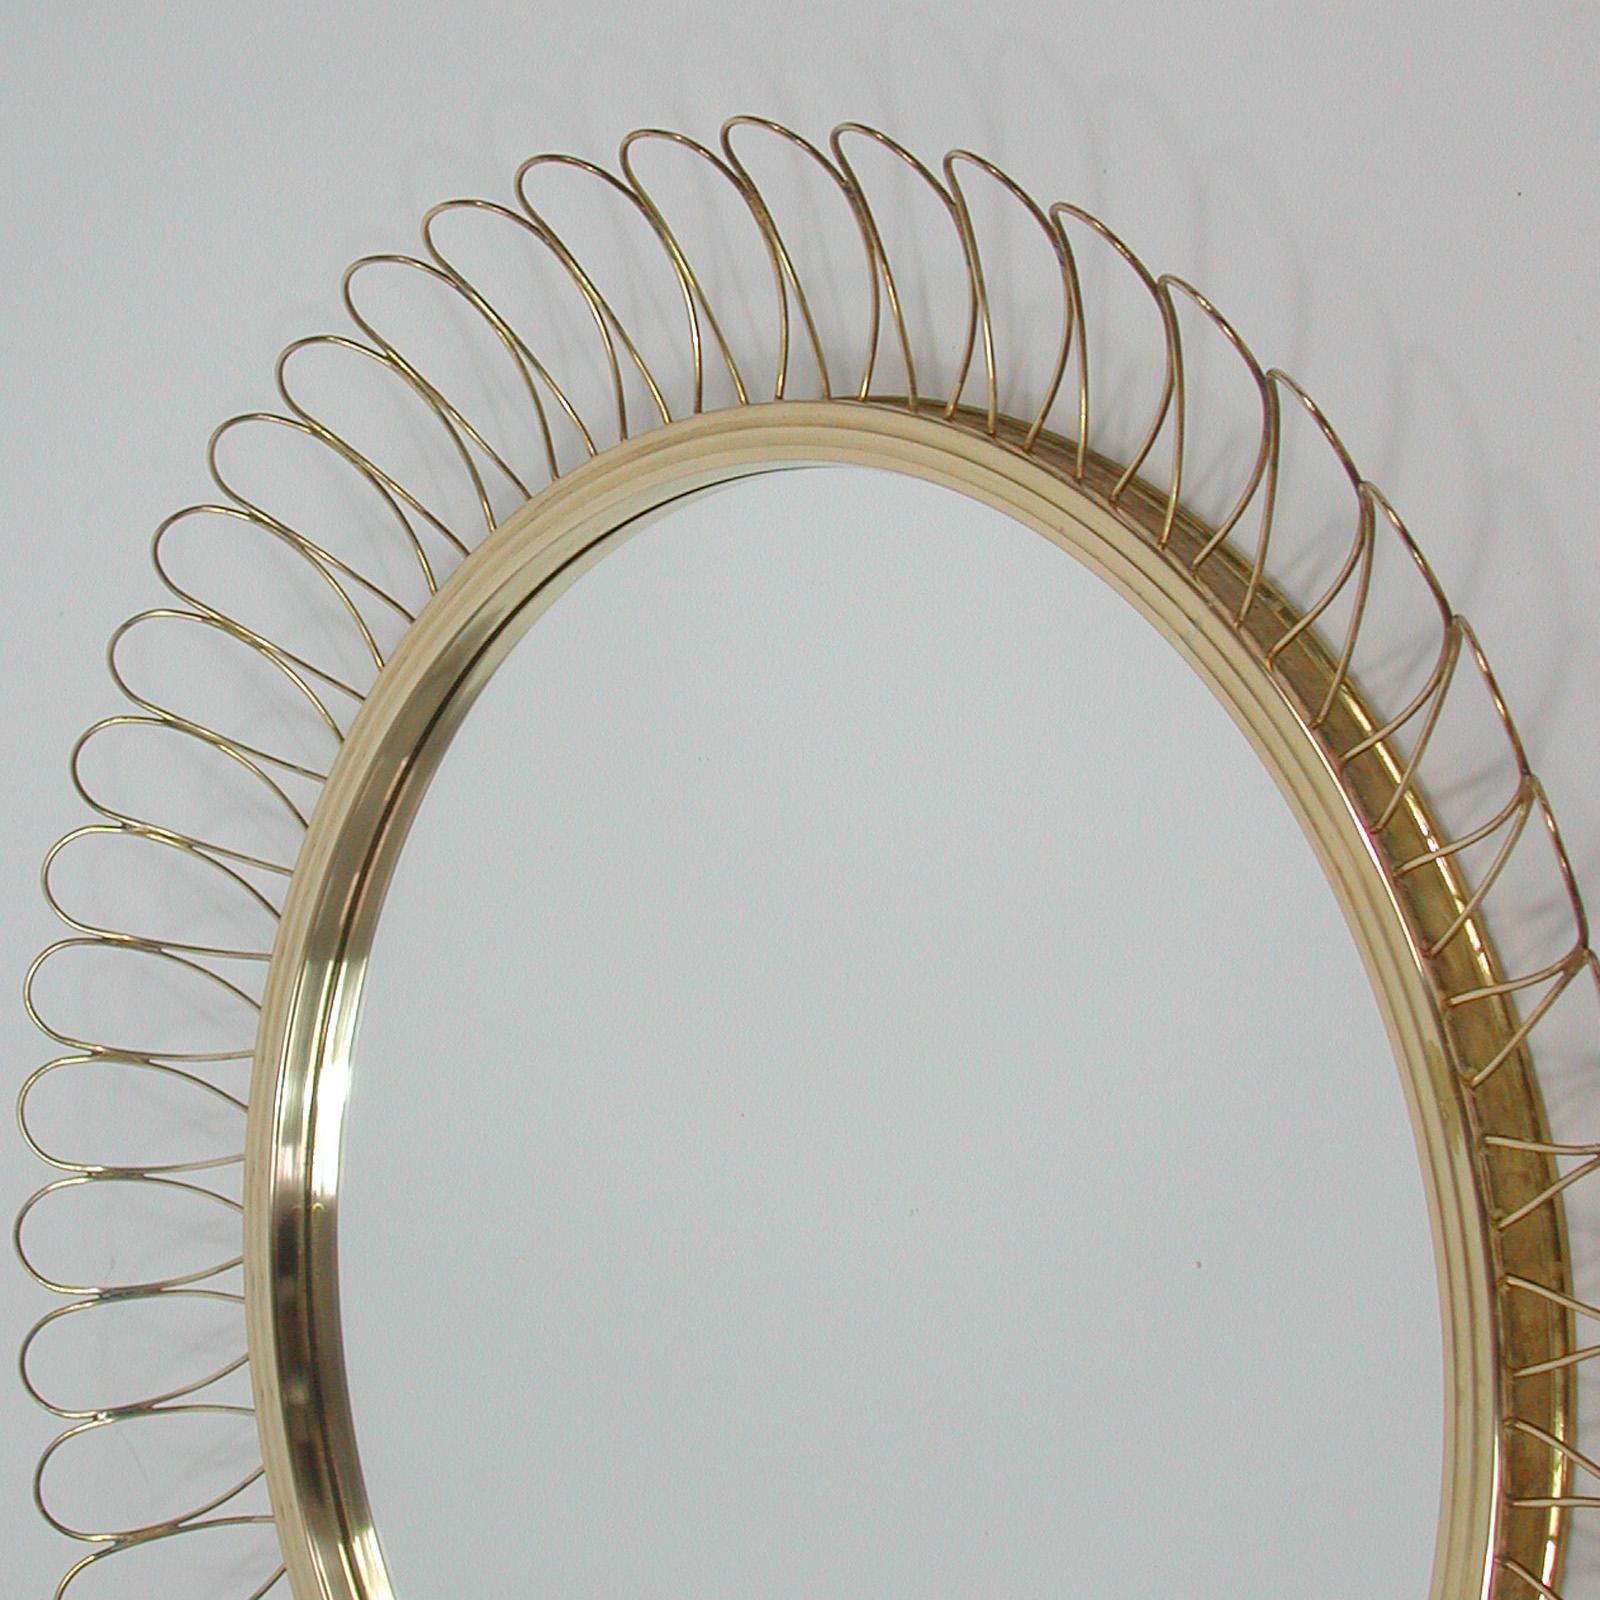 Midcentury Sculptural Round Brass Wall Mirror, Sweden 1950s For Sale 3